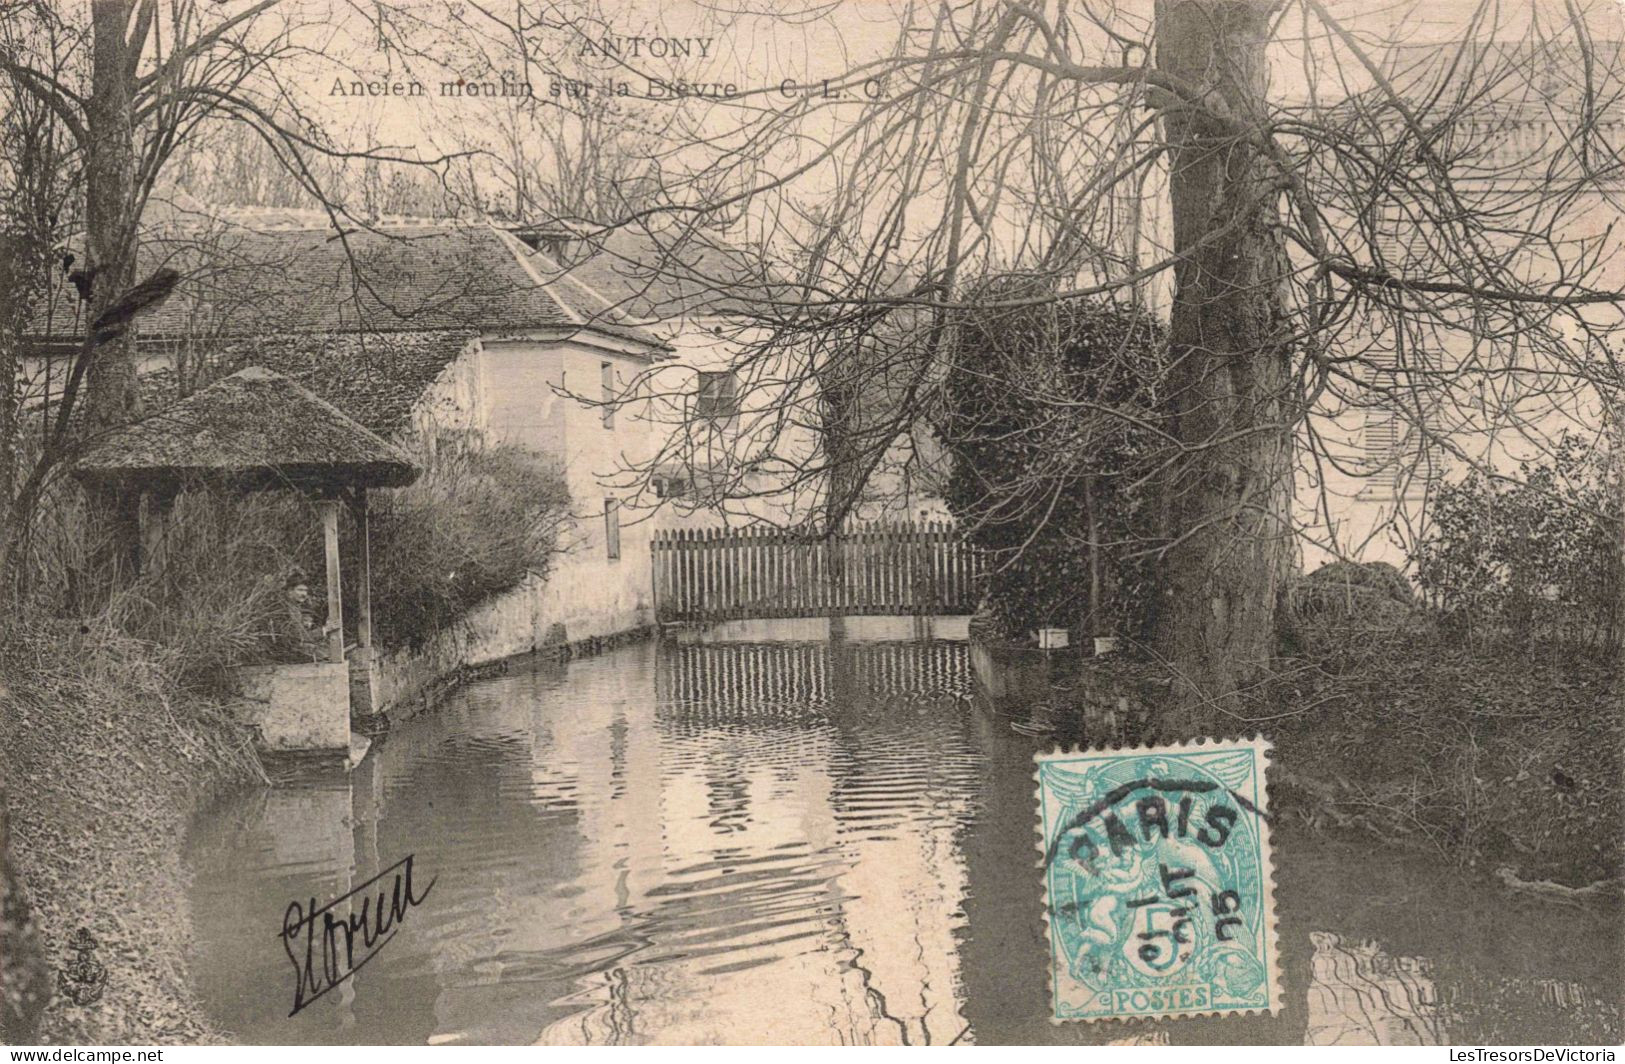 FRANCE - Antony - Ancien Moulin Sur La Bèvre - CLC - Carte Postale Ancienne - Antony